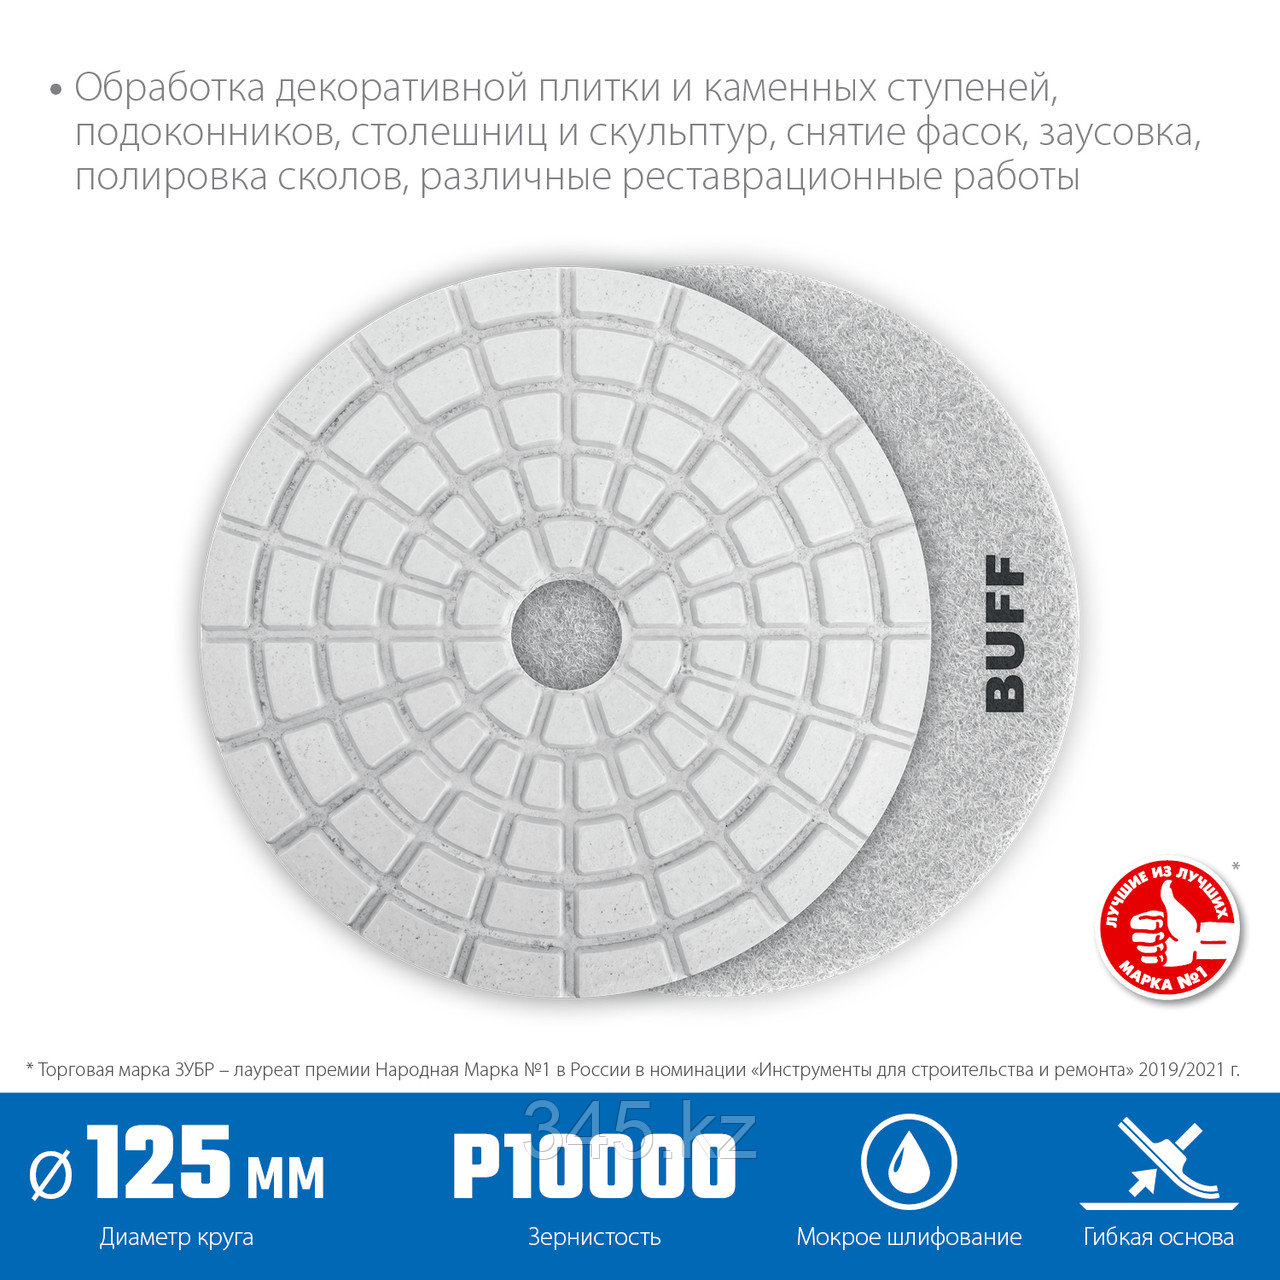 Алмазный гибкий шлифовальный круг ЗУБР BUFF 125мм №10000 (Черепашка) для мокрого шлифования